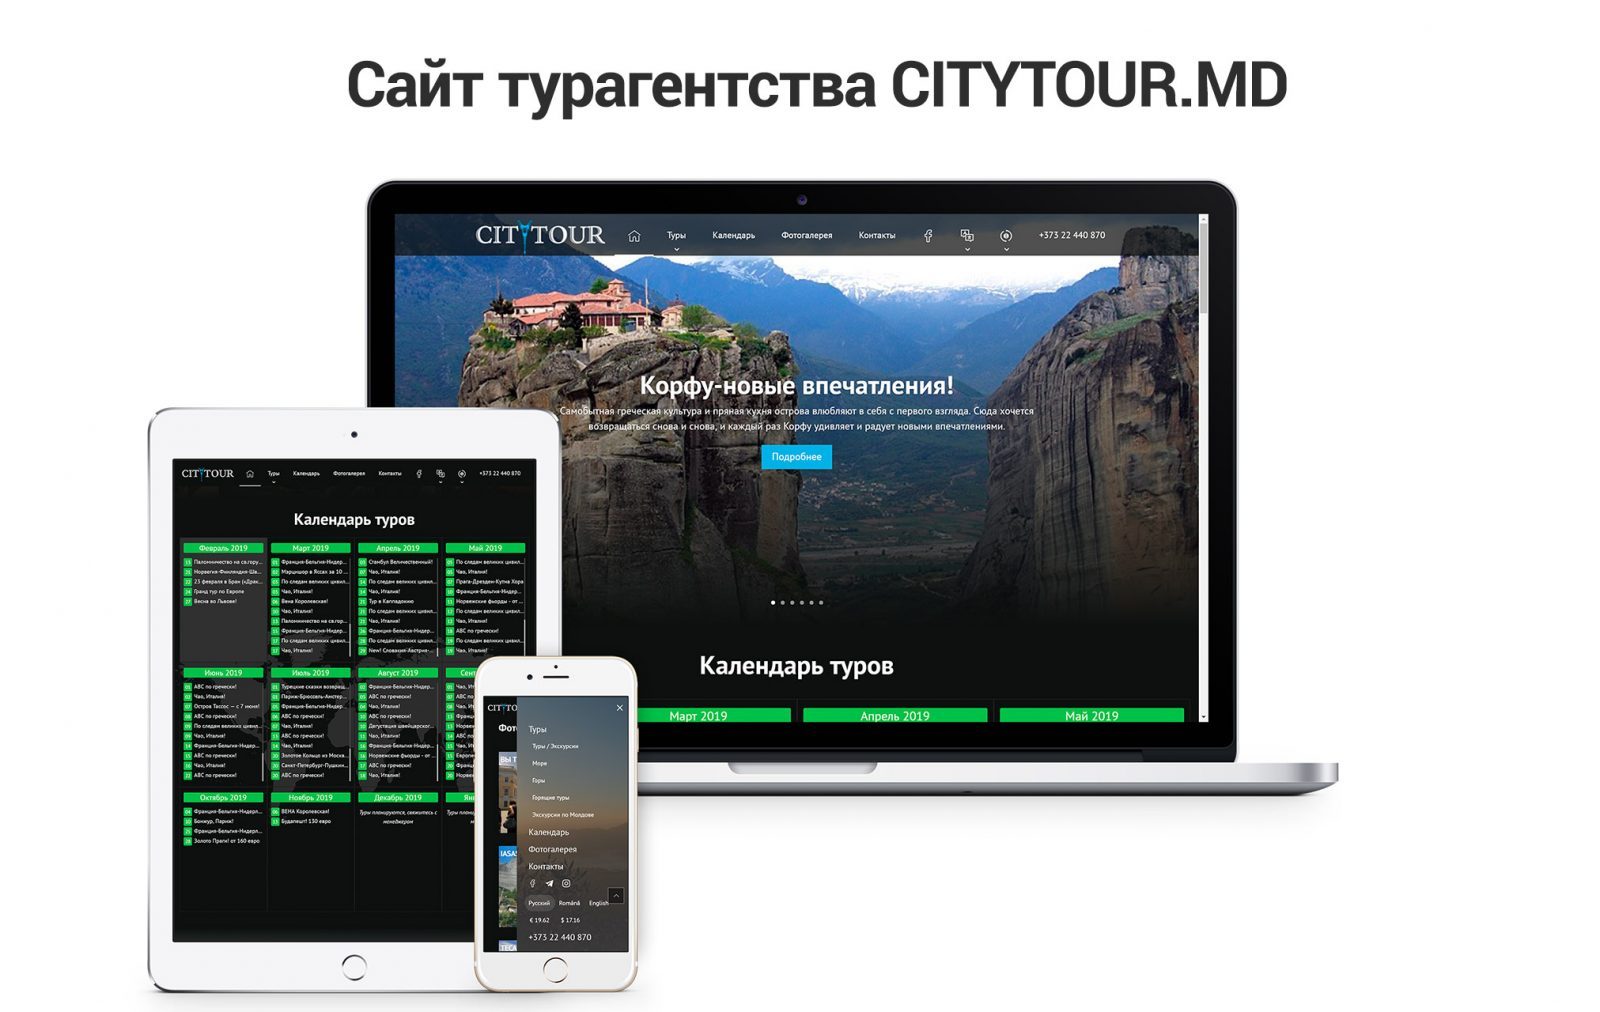 Site de călătorie pentru CityTour 1